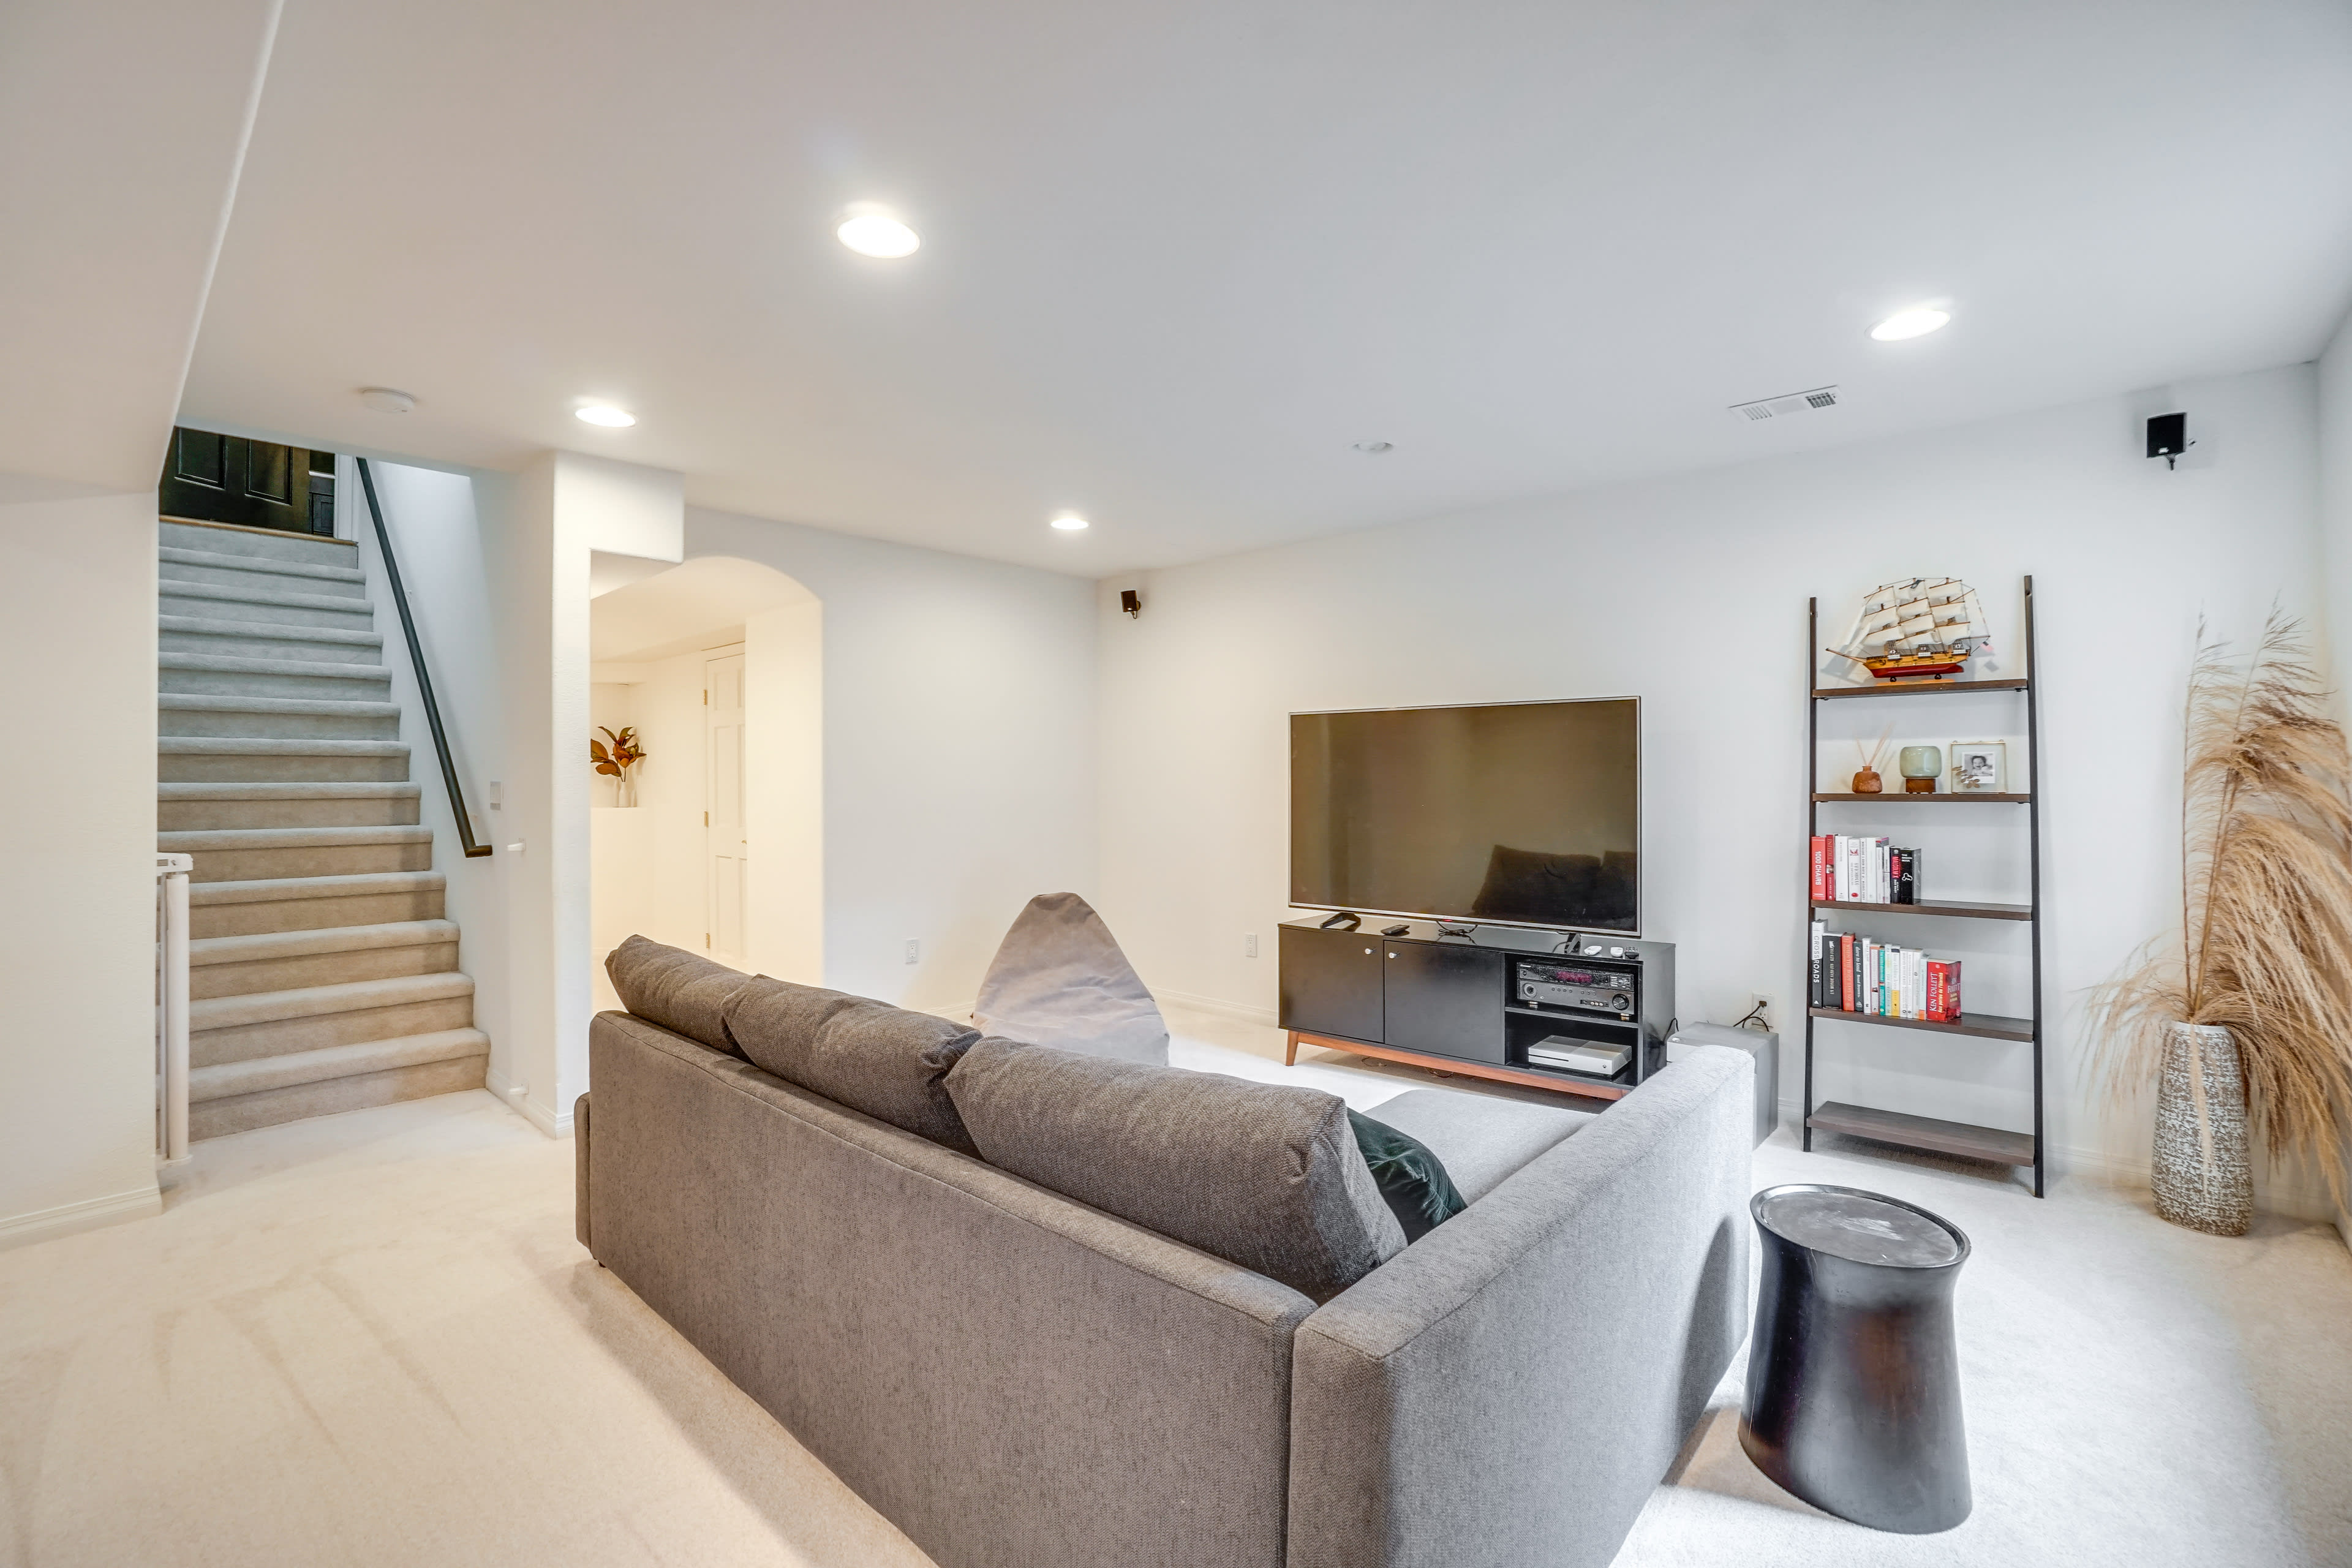 Lower Living Area | Smart TV | Games & Books | Full Sleeper Sofa